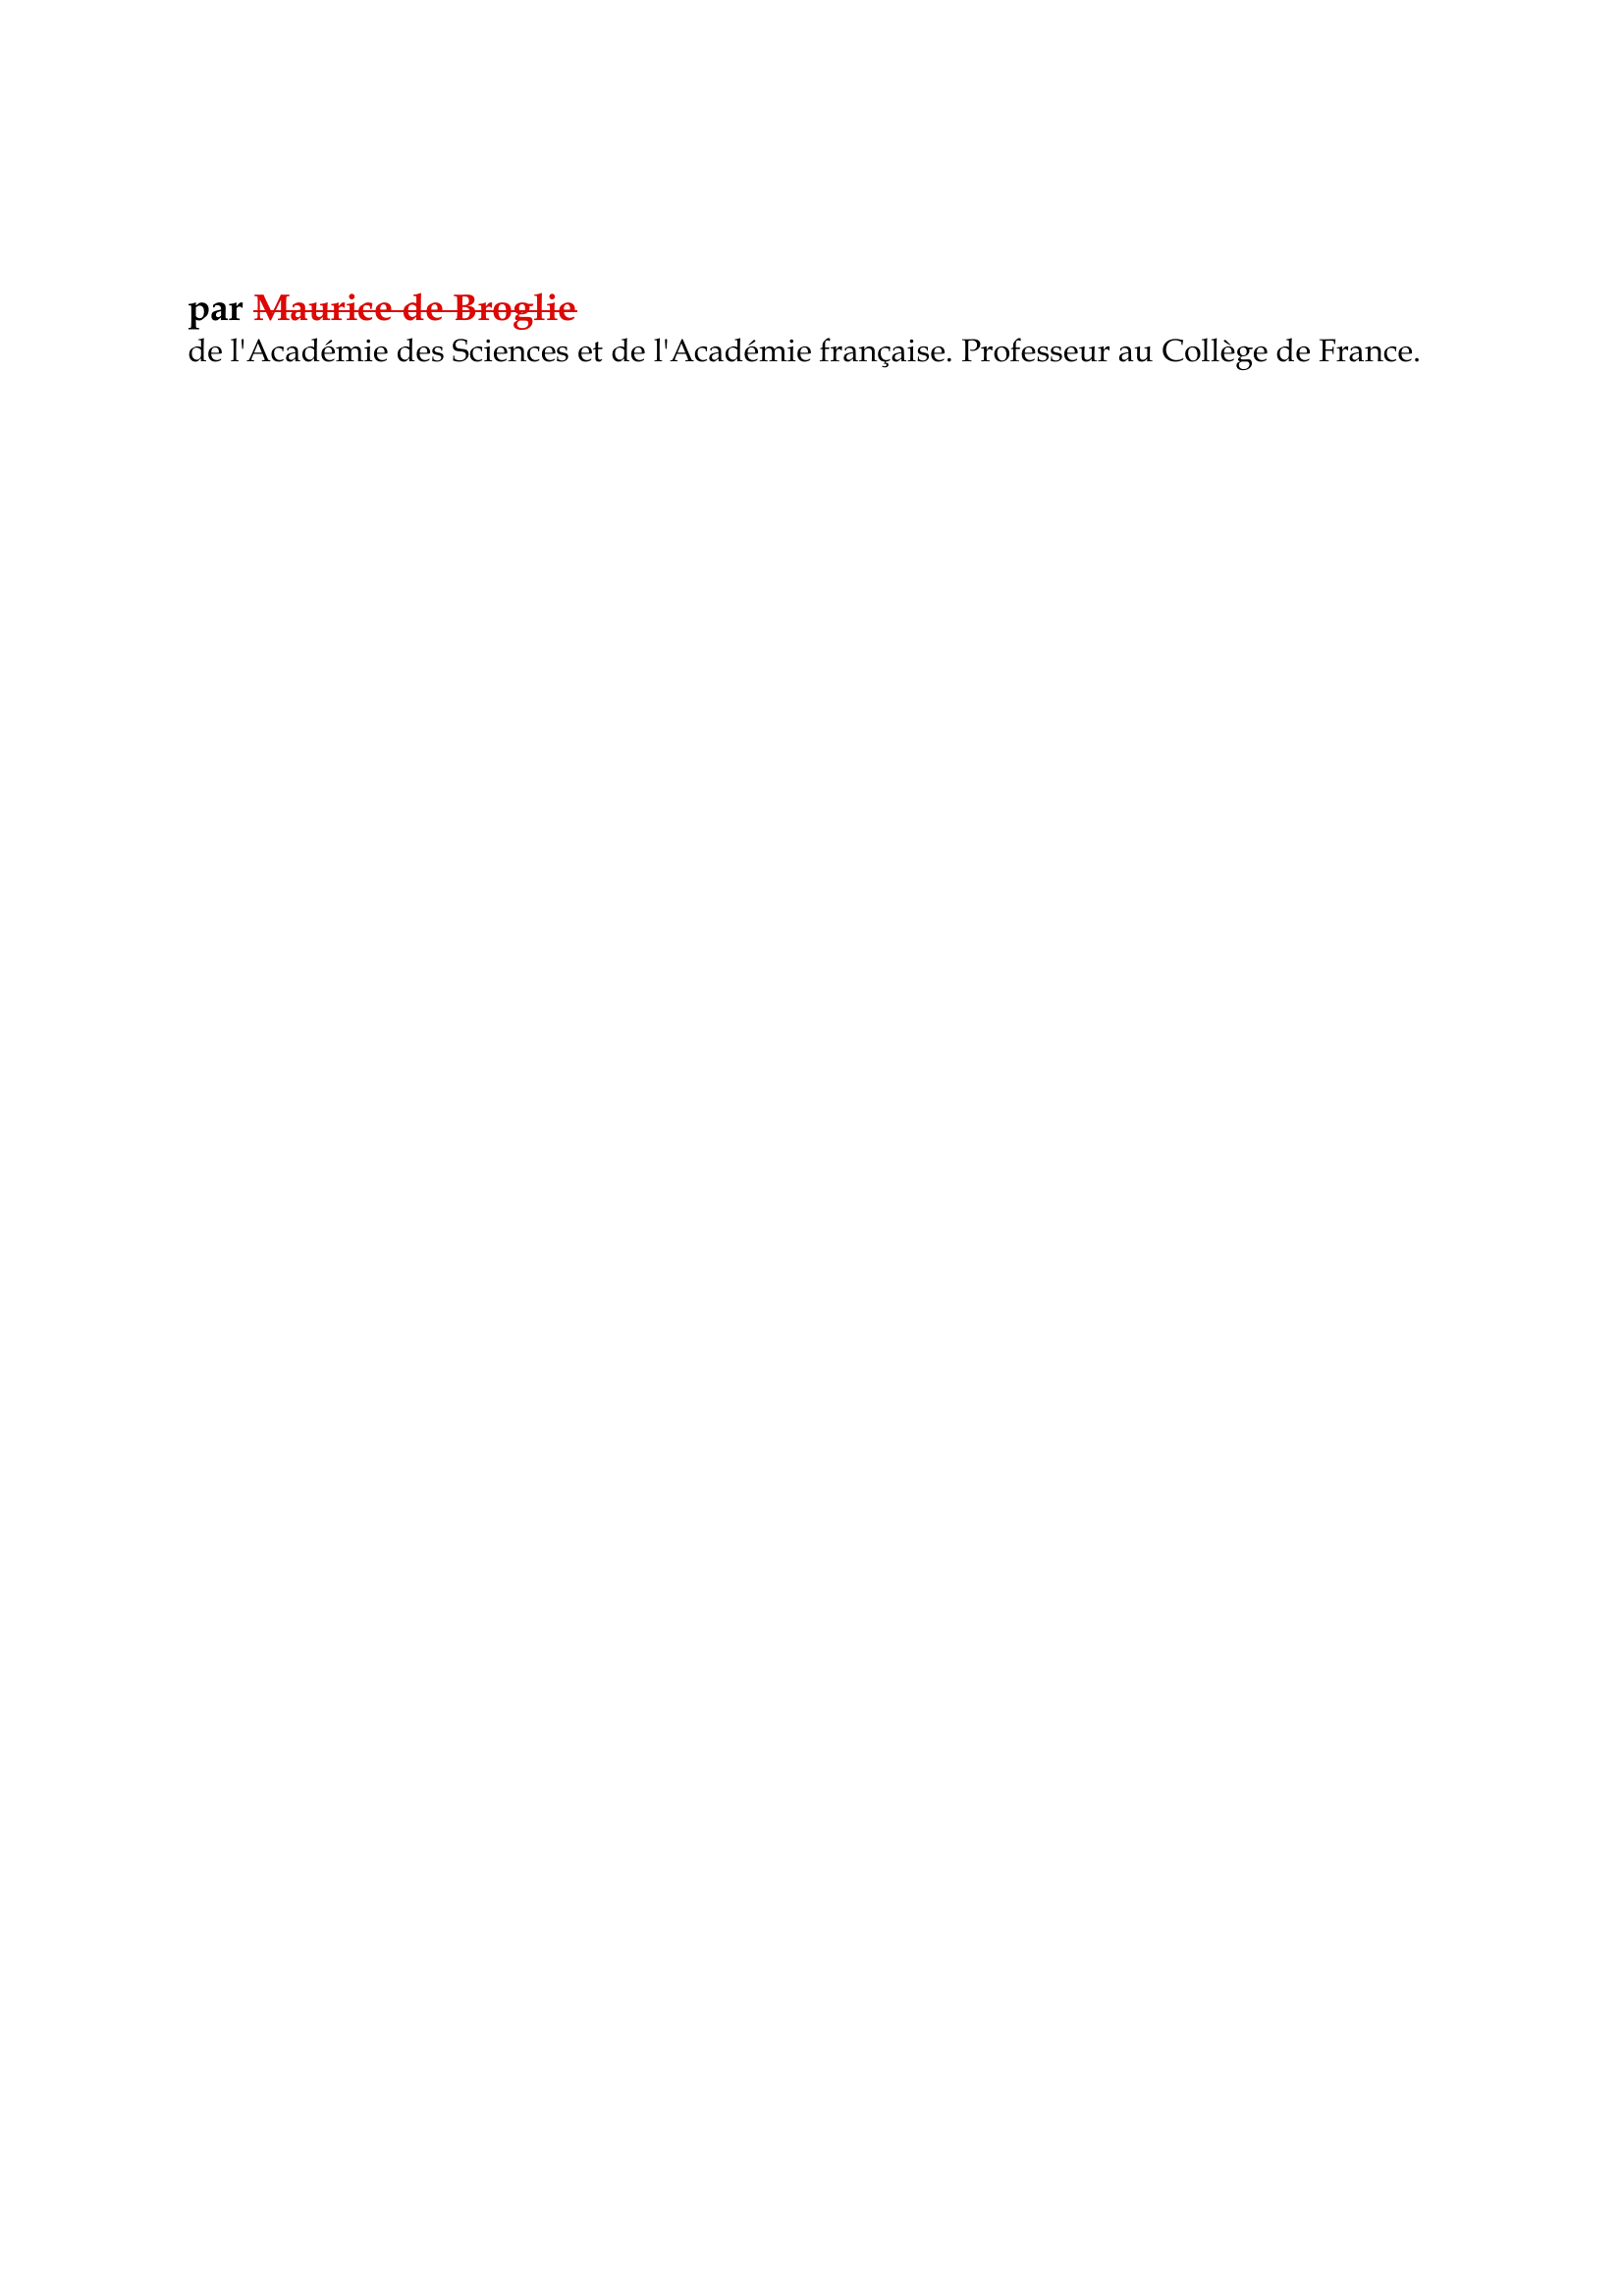 Prévisualisation du document Louis de Broglie

par Maurice de Broglie
de l'Académie des Sciences et de l'Académie française.